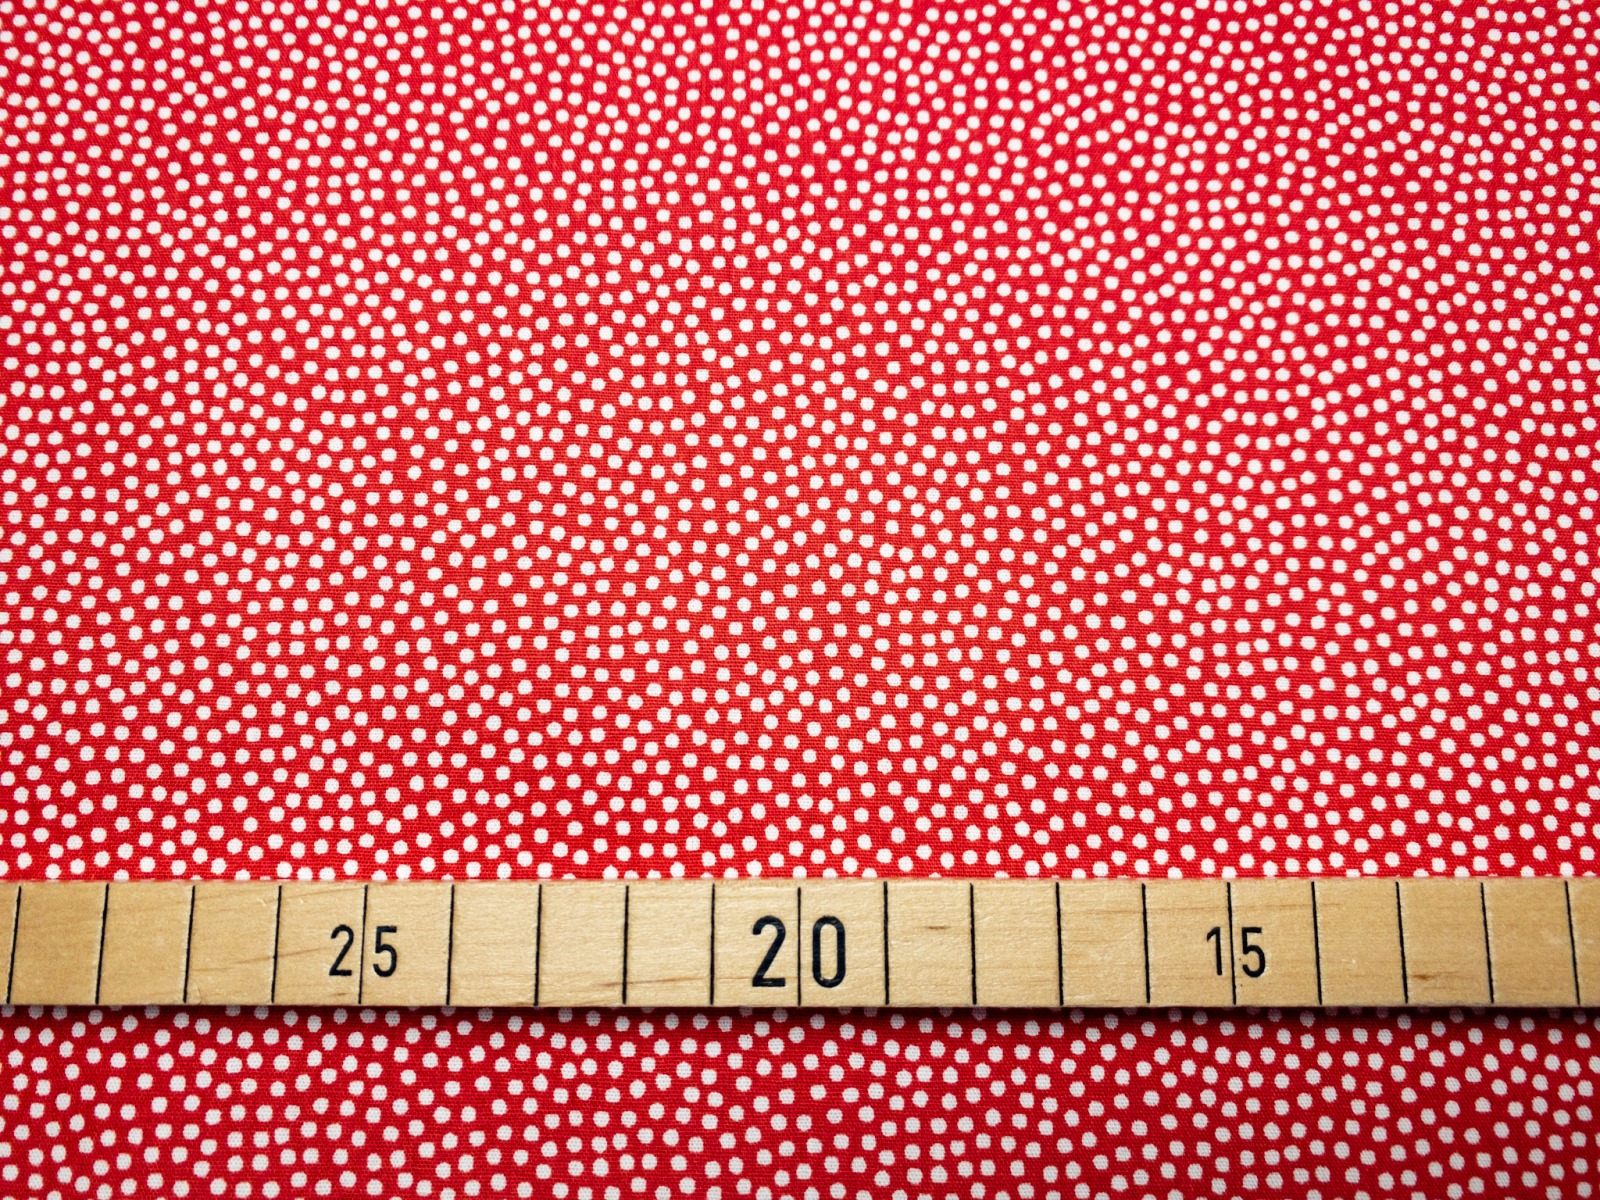 Baumwollwebware - unregelmäßige Punkte - rot/weiß - 100% Baumwolle - Dotty - Swafing